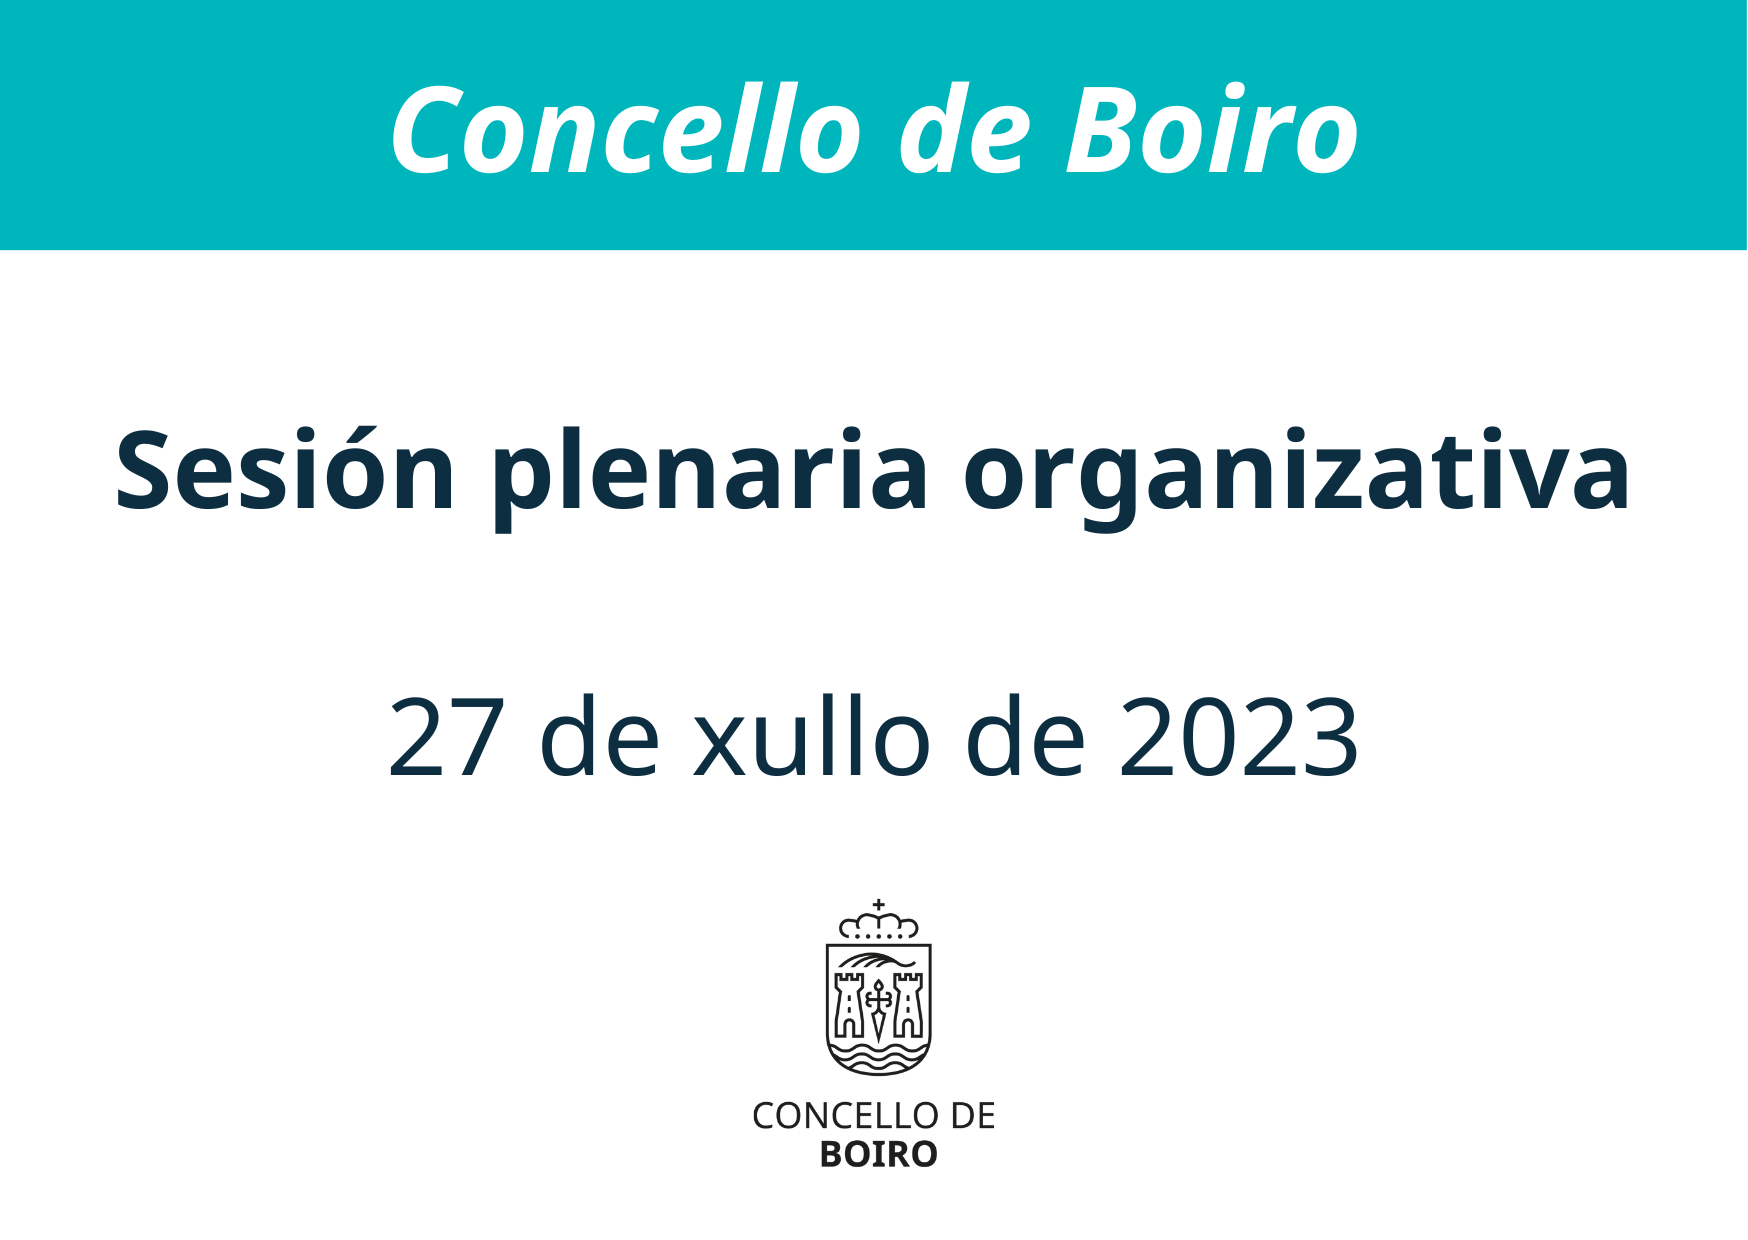 Sesión plenaria organizativa do 27 de xullo de 2023 | Concello de Boiro 